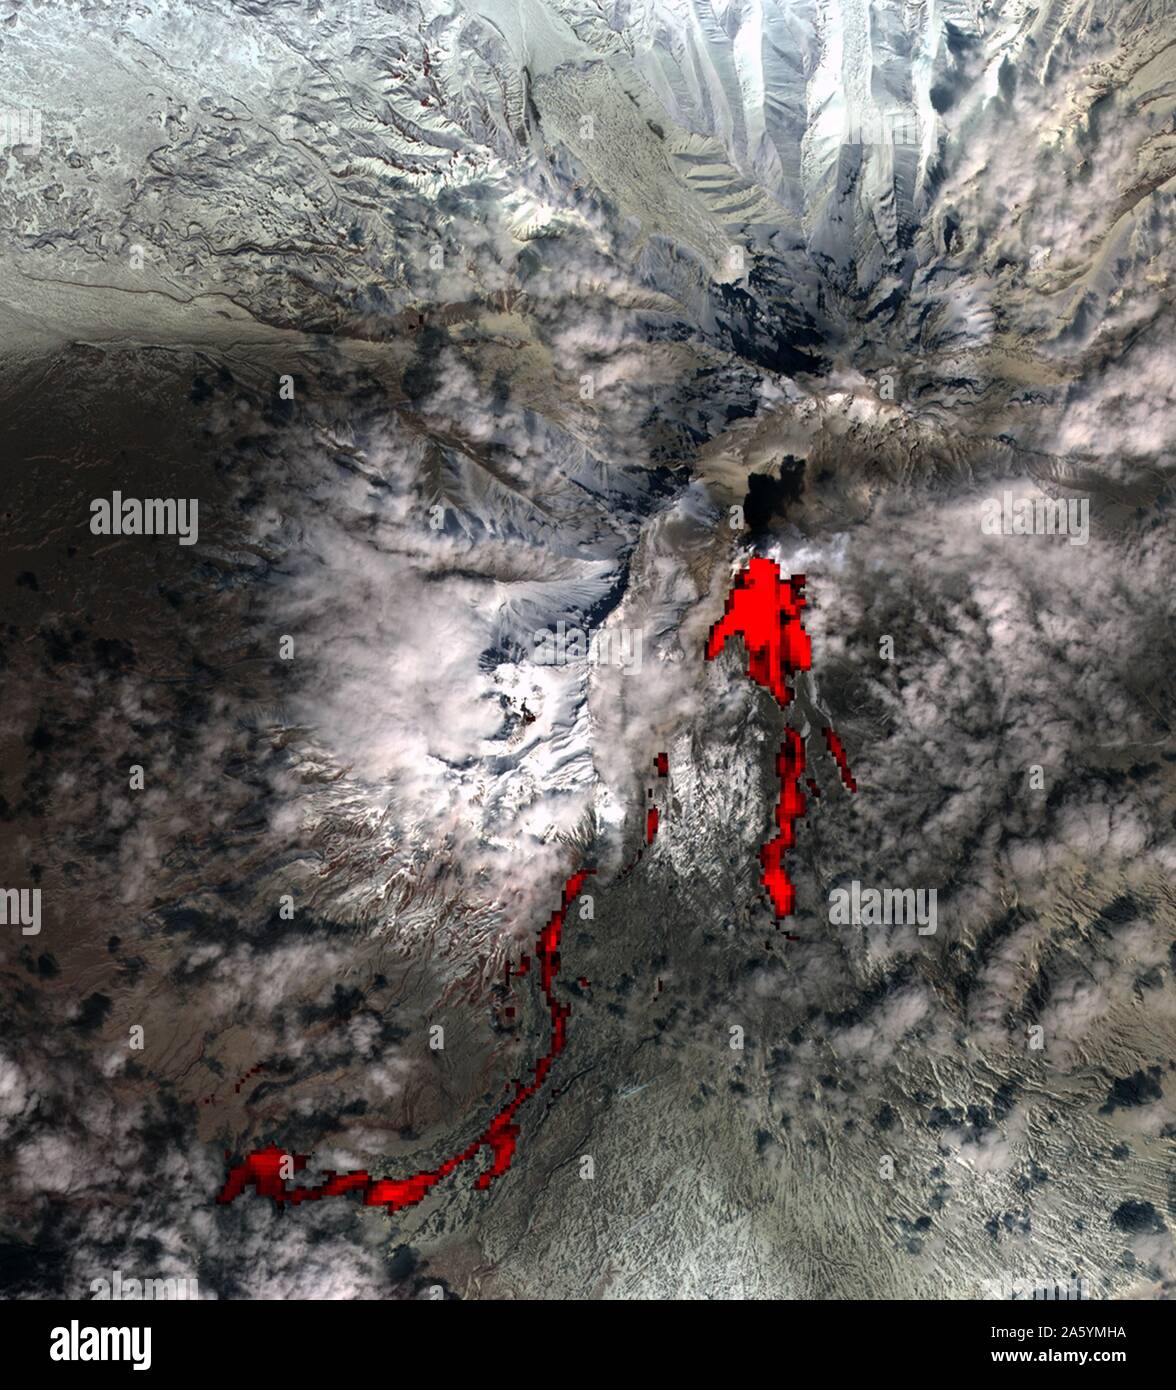 Uno dei più attivi volcanically regioni del mondo, penisola di Kamchatka in Siberia orientale, Russia. Aprile 26, 2007. Immagine satellitare. Foto Stock